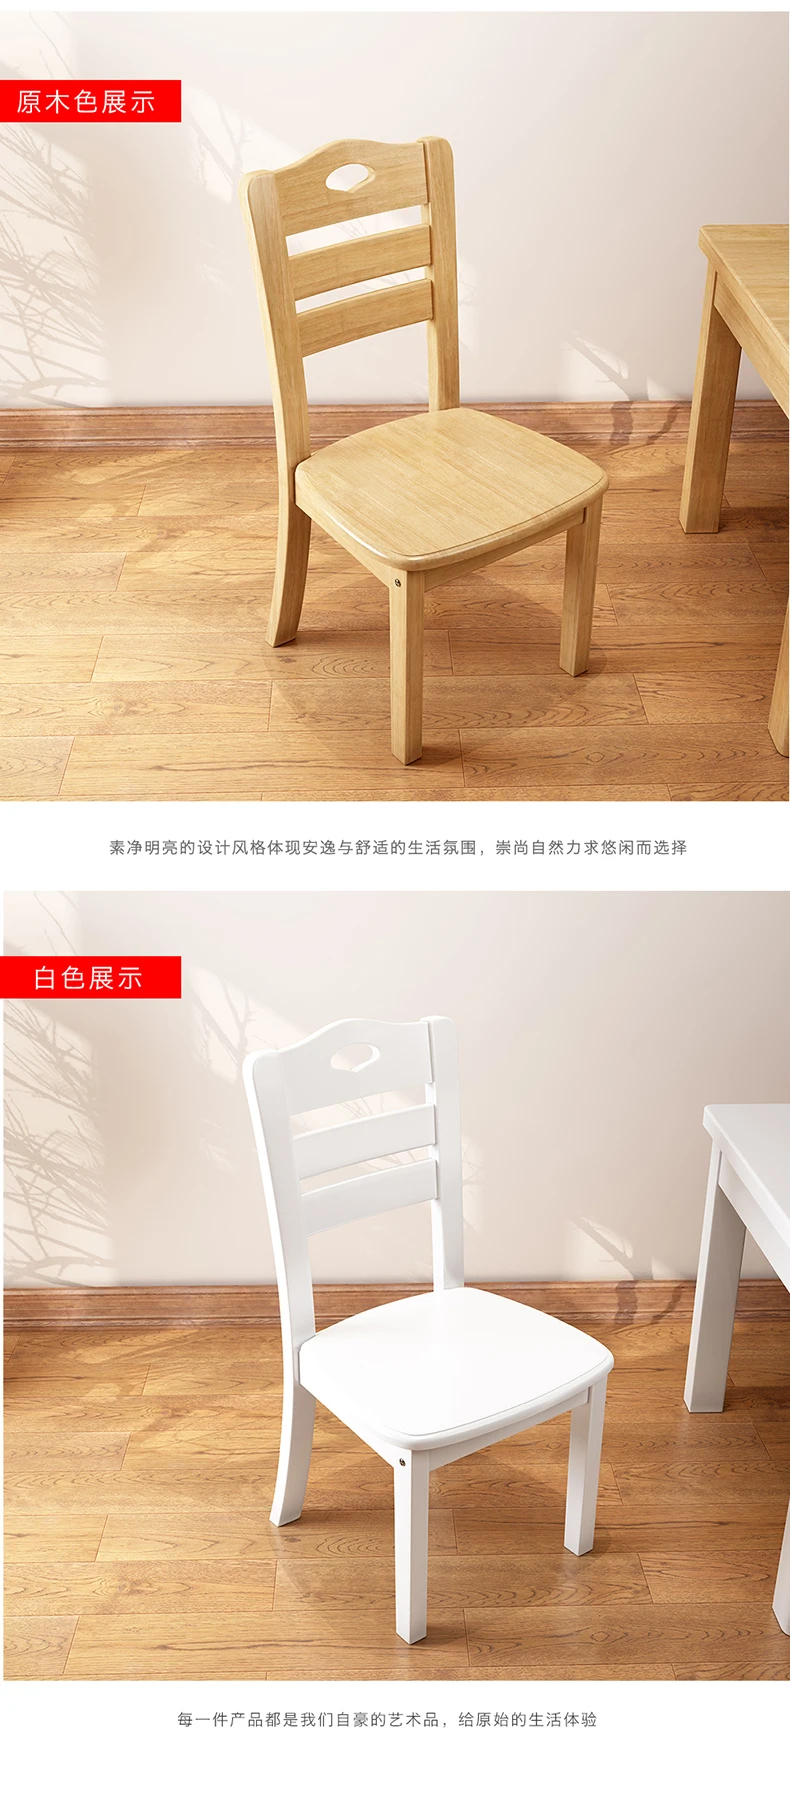 Луи Мода обеденные стулья китайский твердой древесины и резины древесины дома отель современный минималистский современный